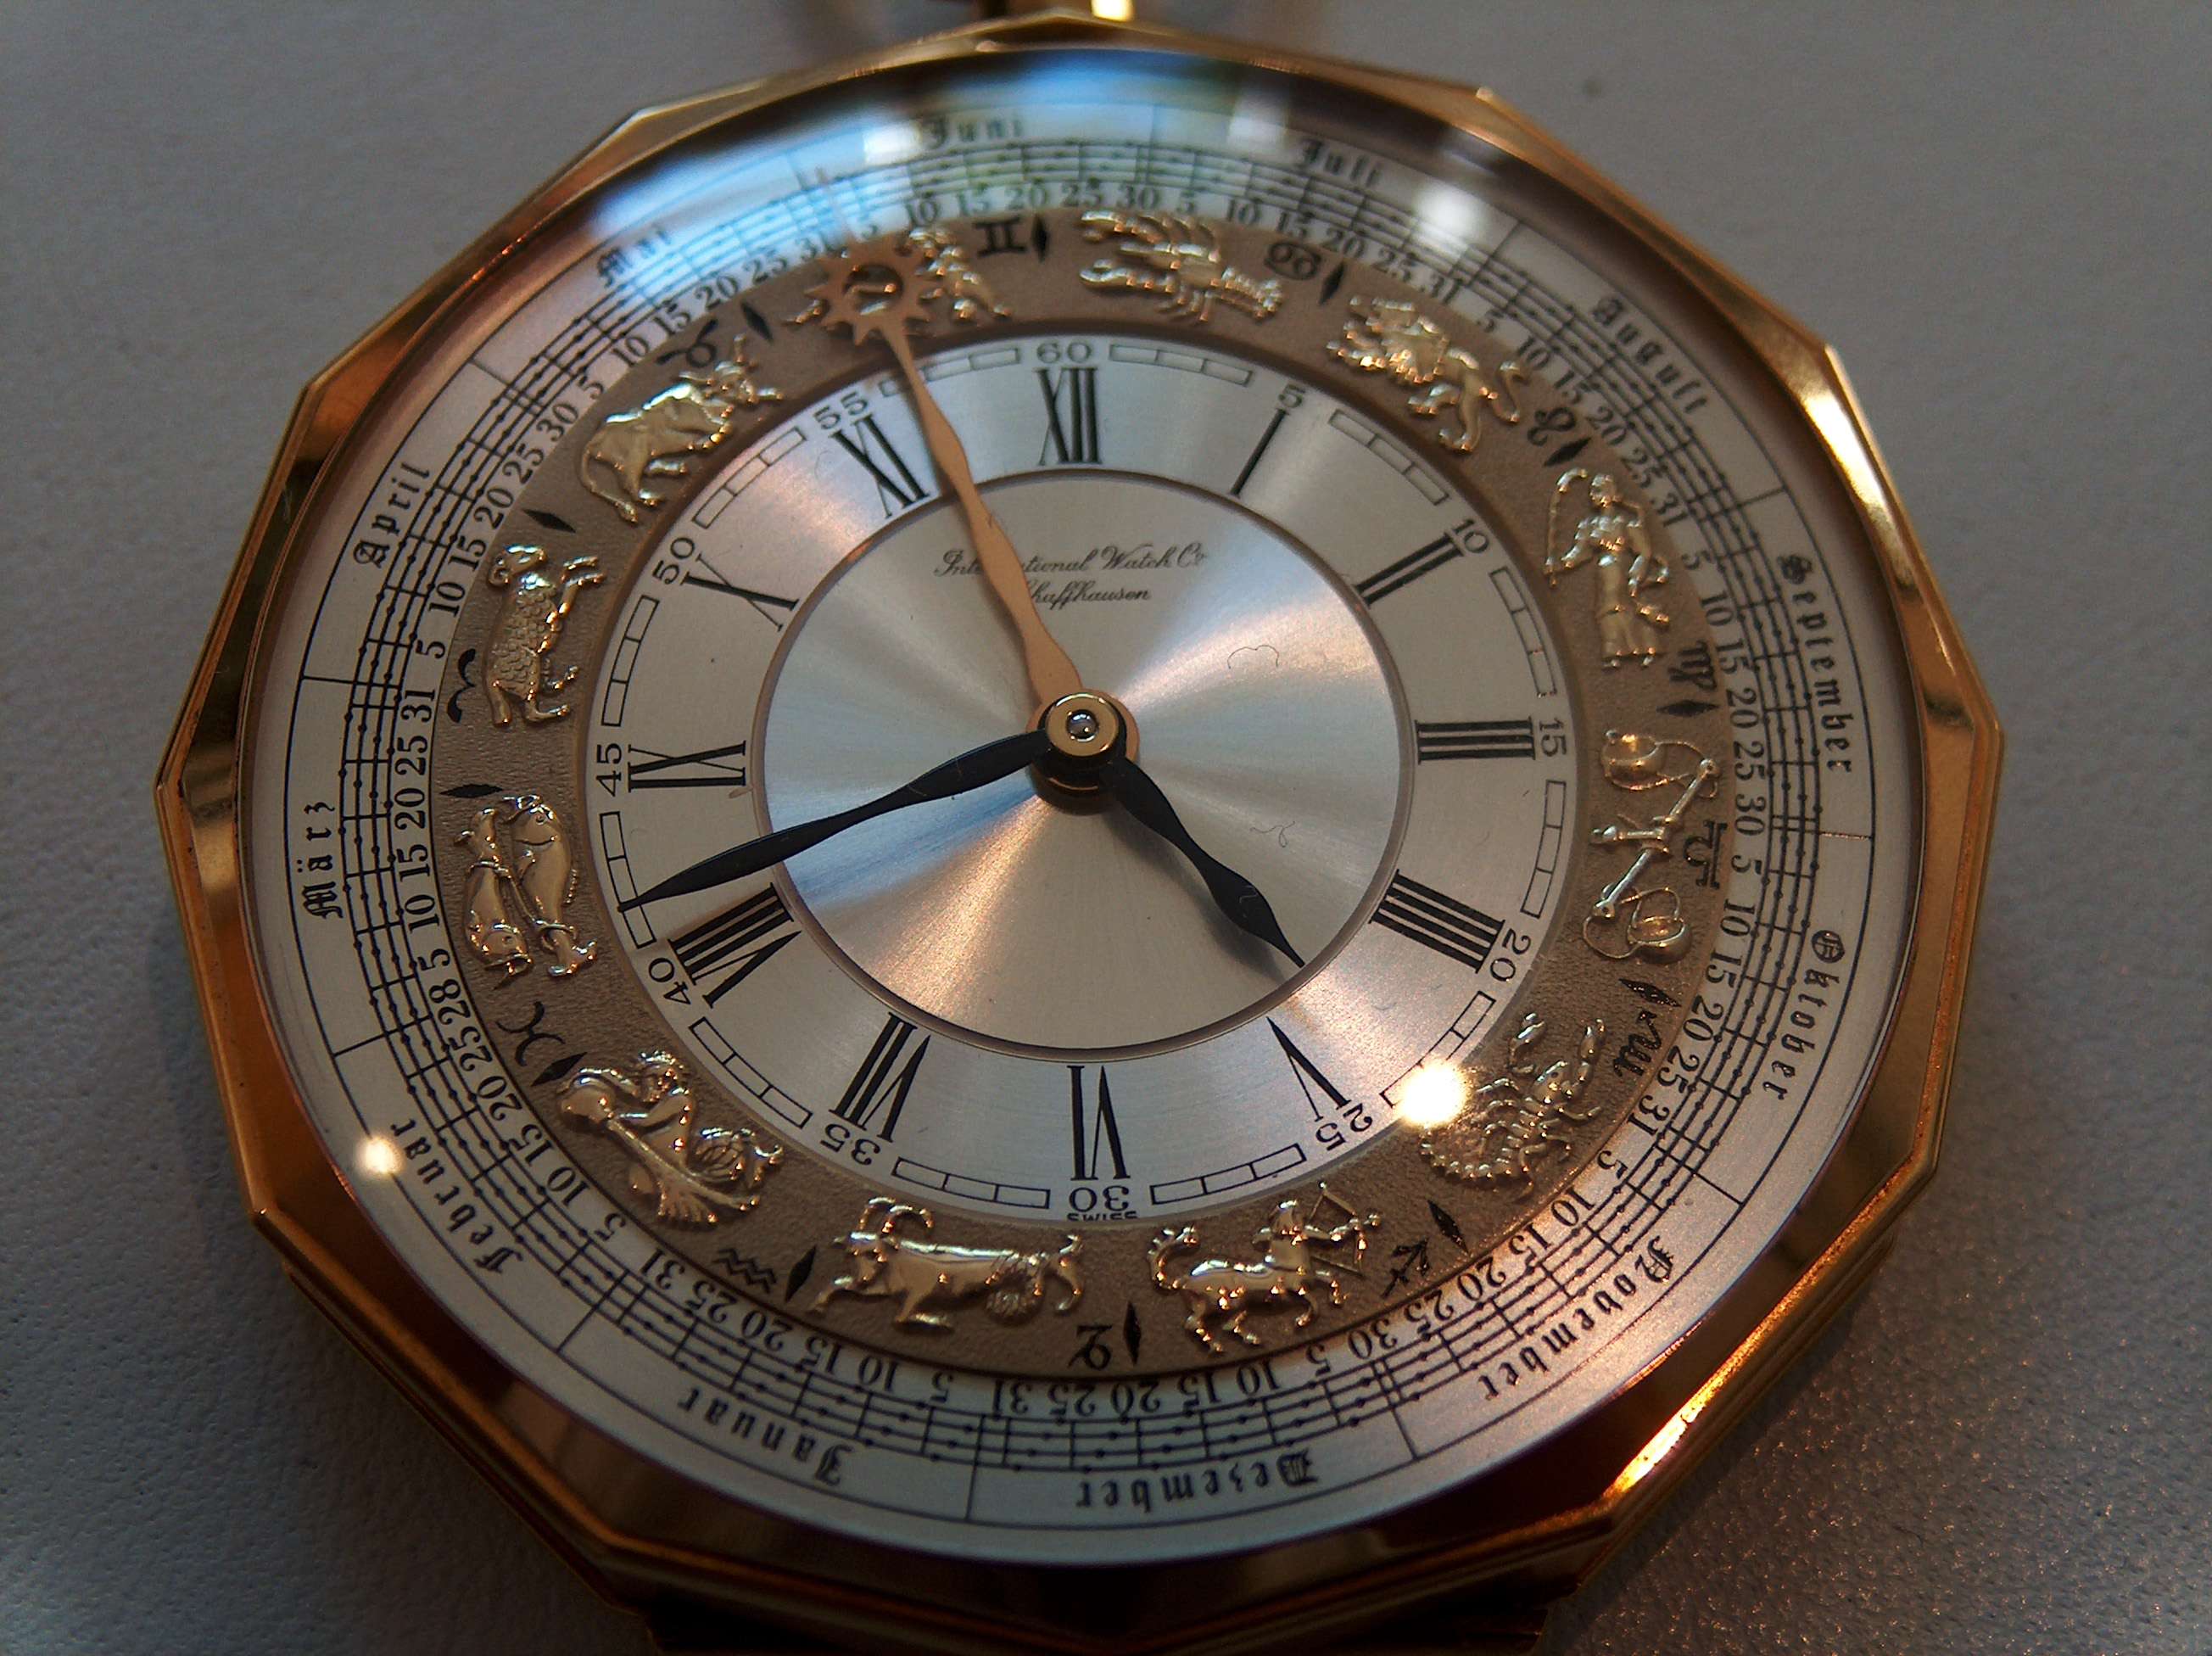 Replica Breitling Aerospace Quartz Titanium Men's Wrist Watch Model E75362